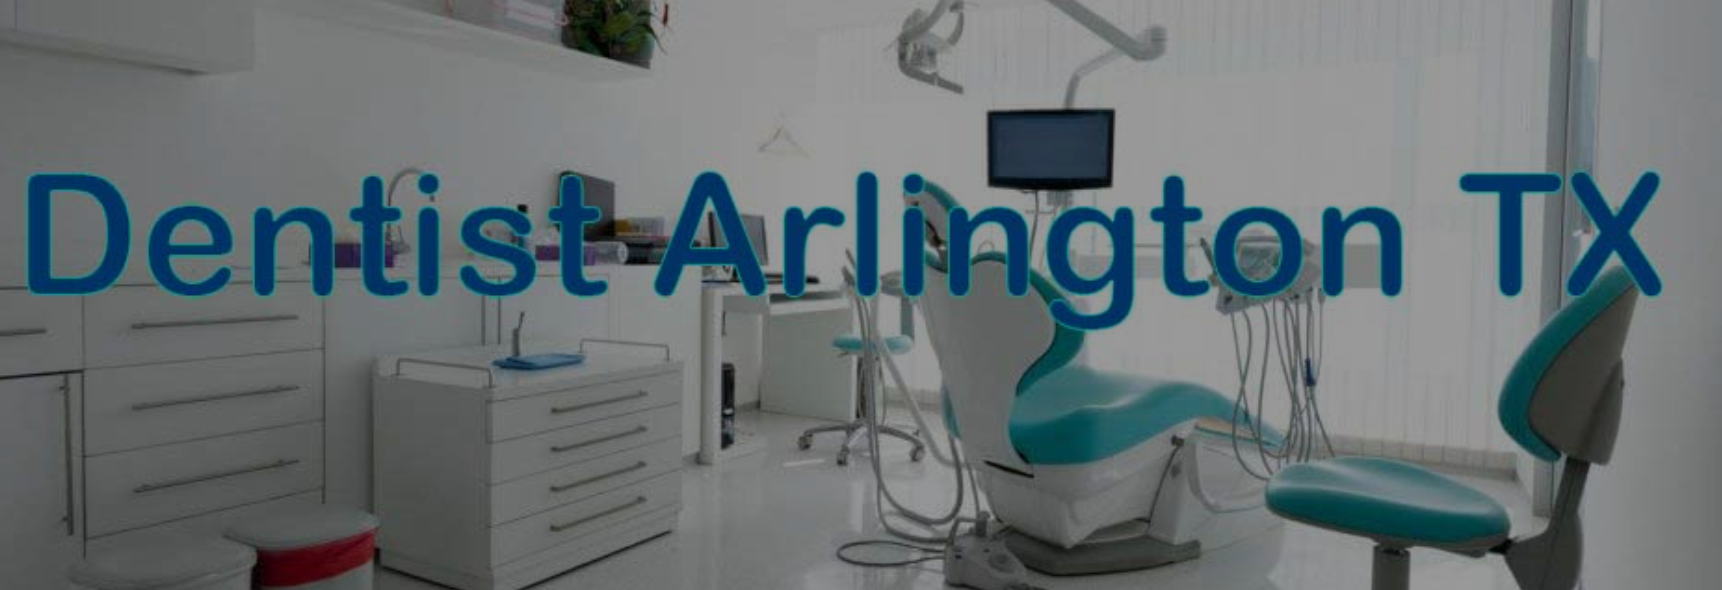 All dental Arlington